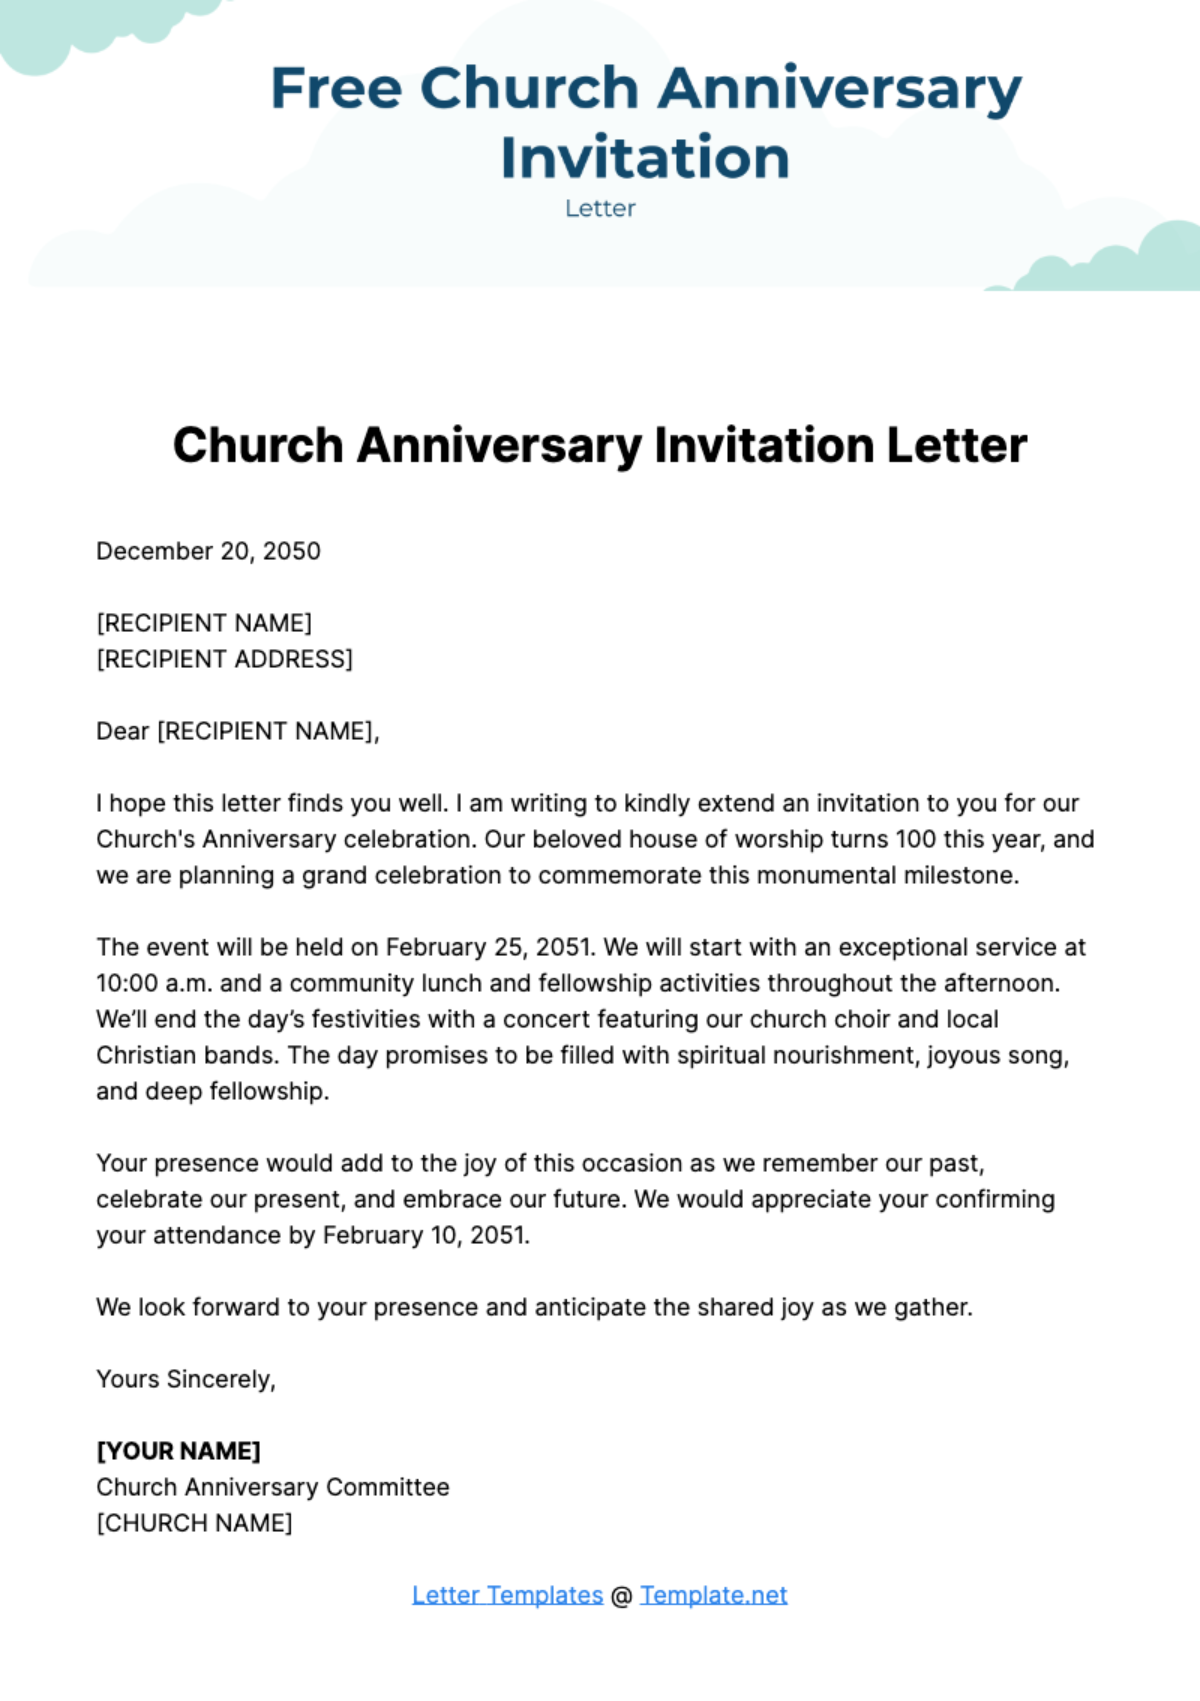 Free Church Anniversary Invitation Letter Template